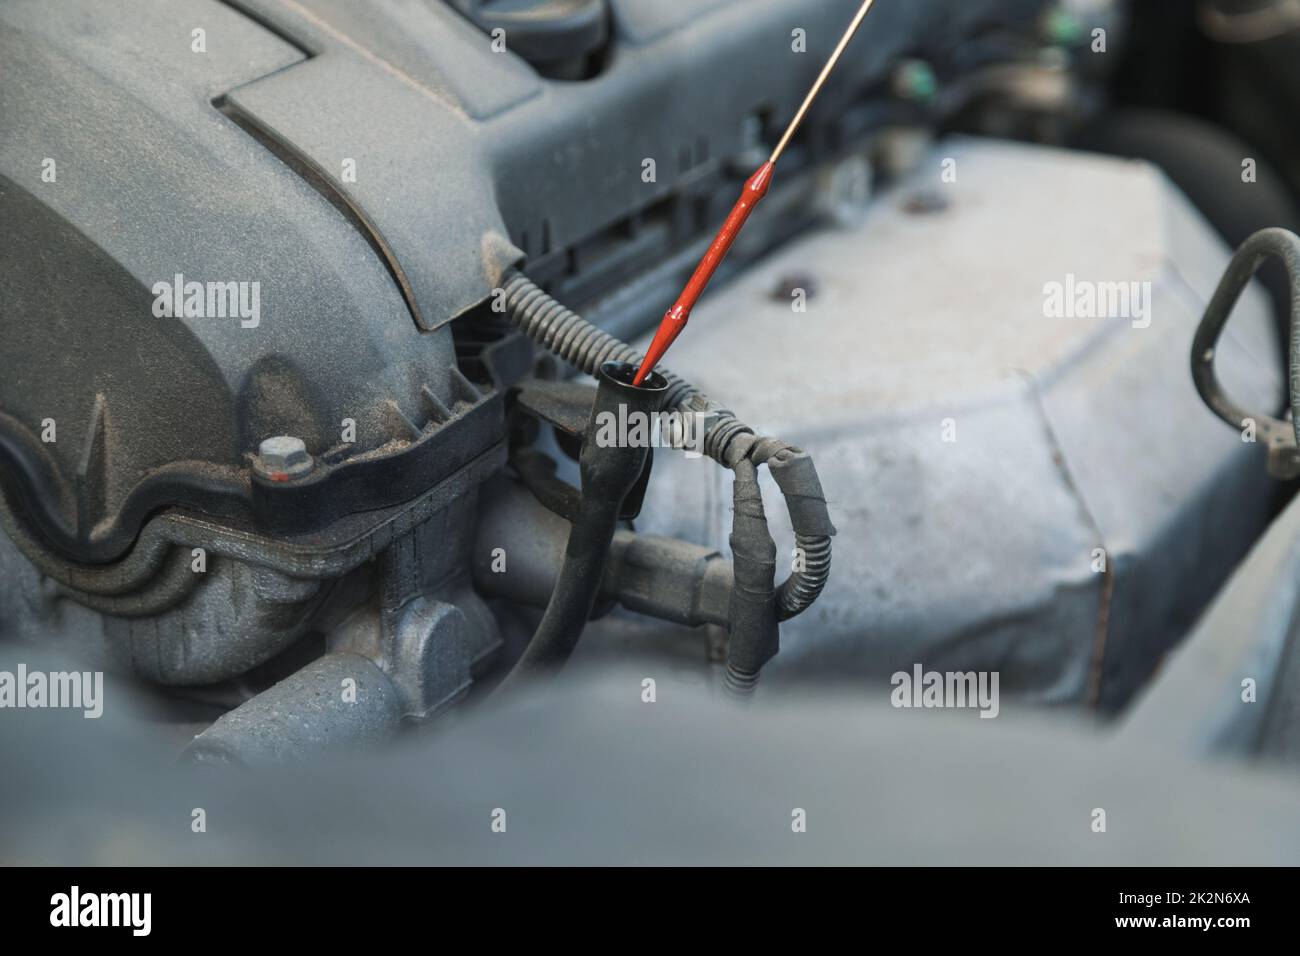 L'addetto alla manutenzione preleva un'astina di livello per controllare il livello dell'olio nel motore dell'auto. Foto Stock